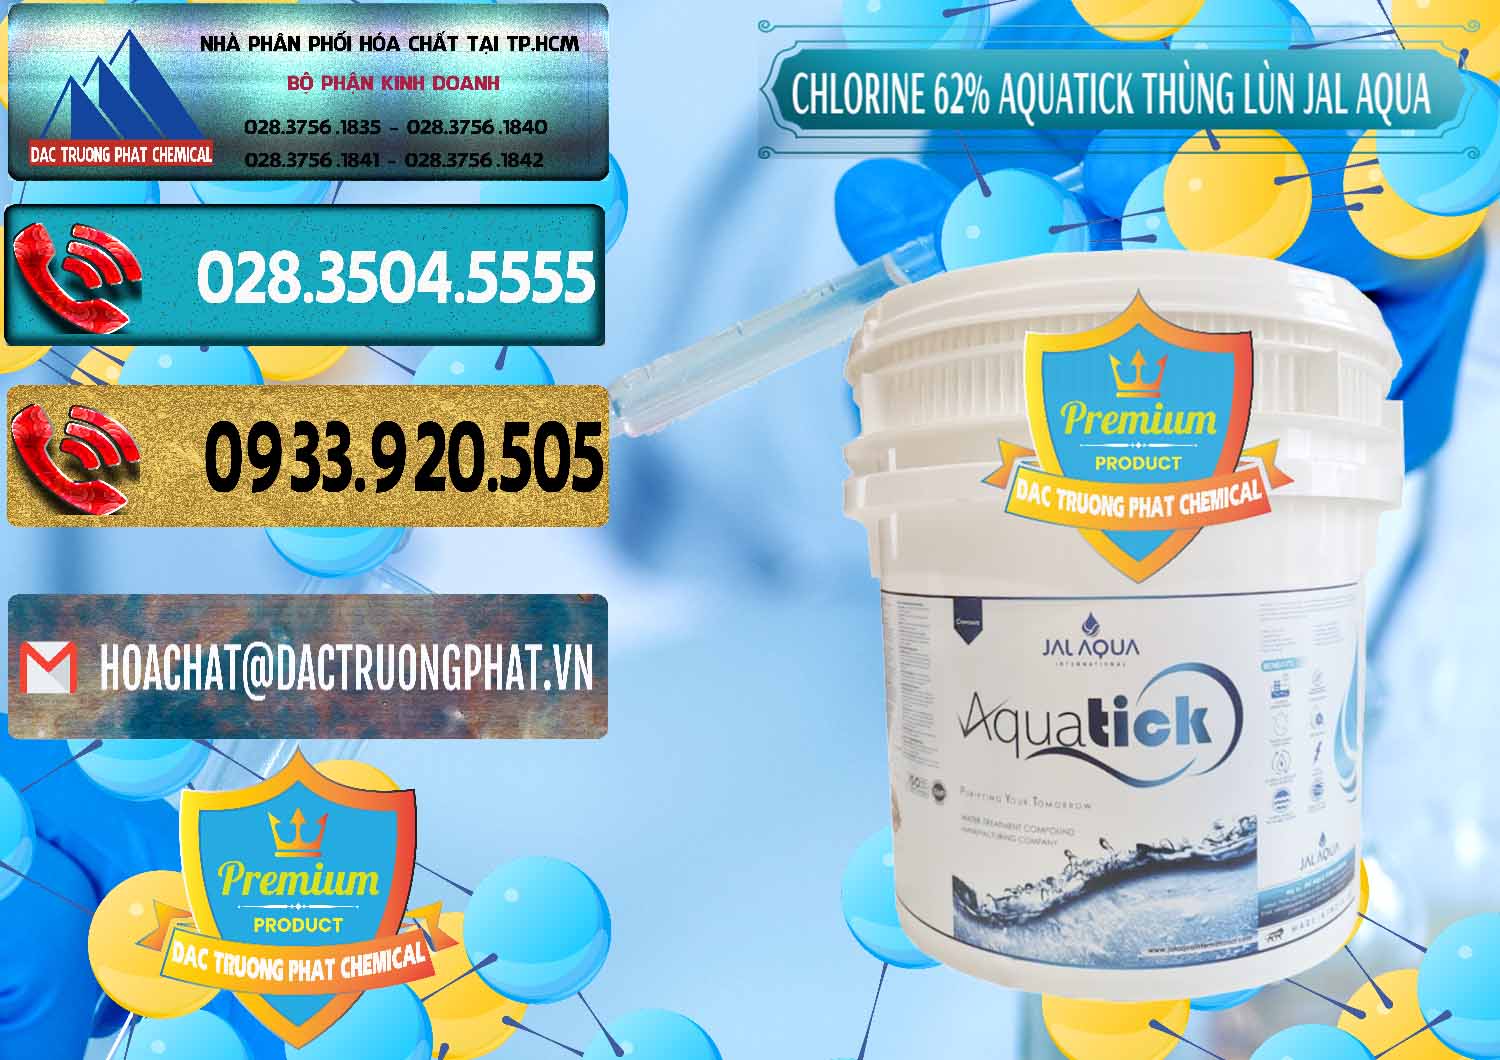 Cty chuyên nhập khẩu & bán Chlorine – Clorin 62% Aquatick Thùng Lùn Jal Aqua Ấn Độ India - 0238 - Cung cấp và nhập khẩu hóa chất tại TP.HCM - hoachatdetnhuom.com